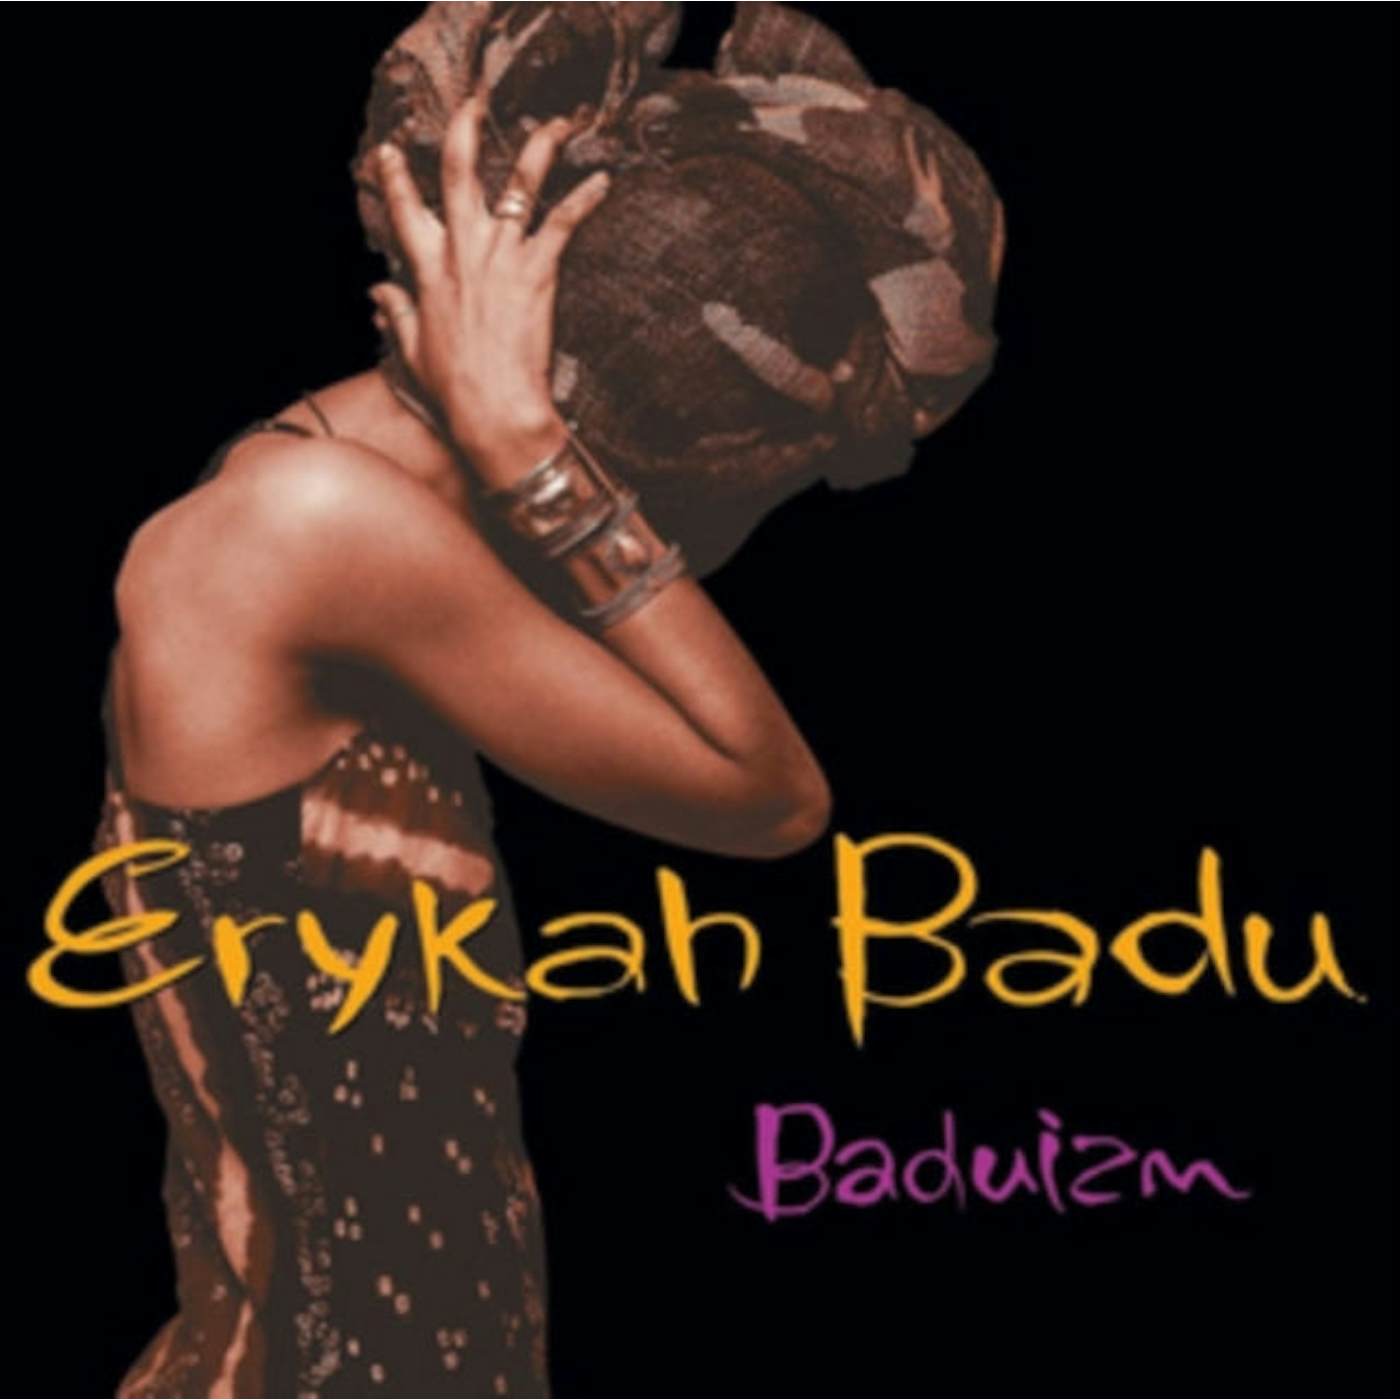 Erykah Badu LP Vinyl Record - Baduizm